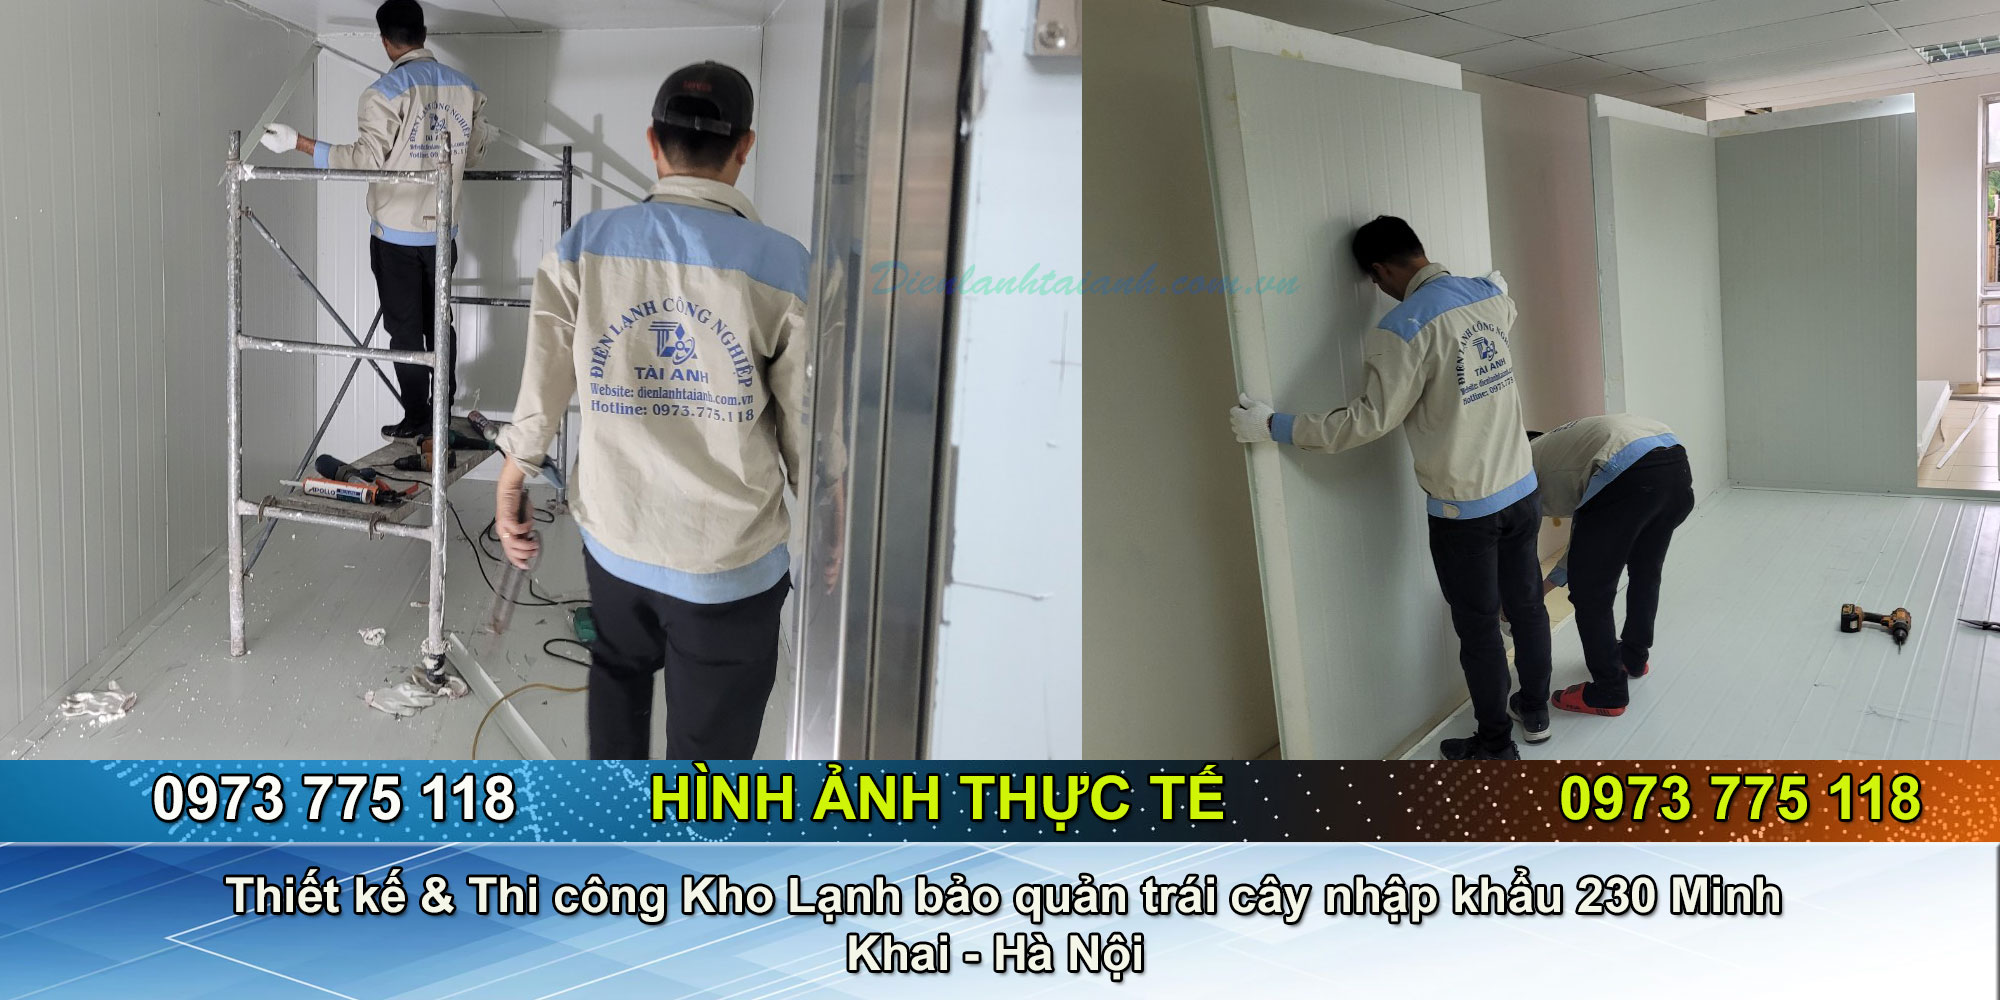 Thiết kế & Thi công Kho Lạnh bảo quản trái cây nhập khẩu 230 Minh Khai Hà Nội